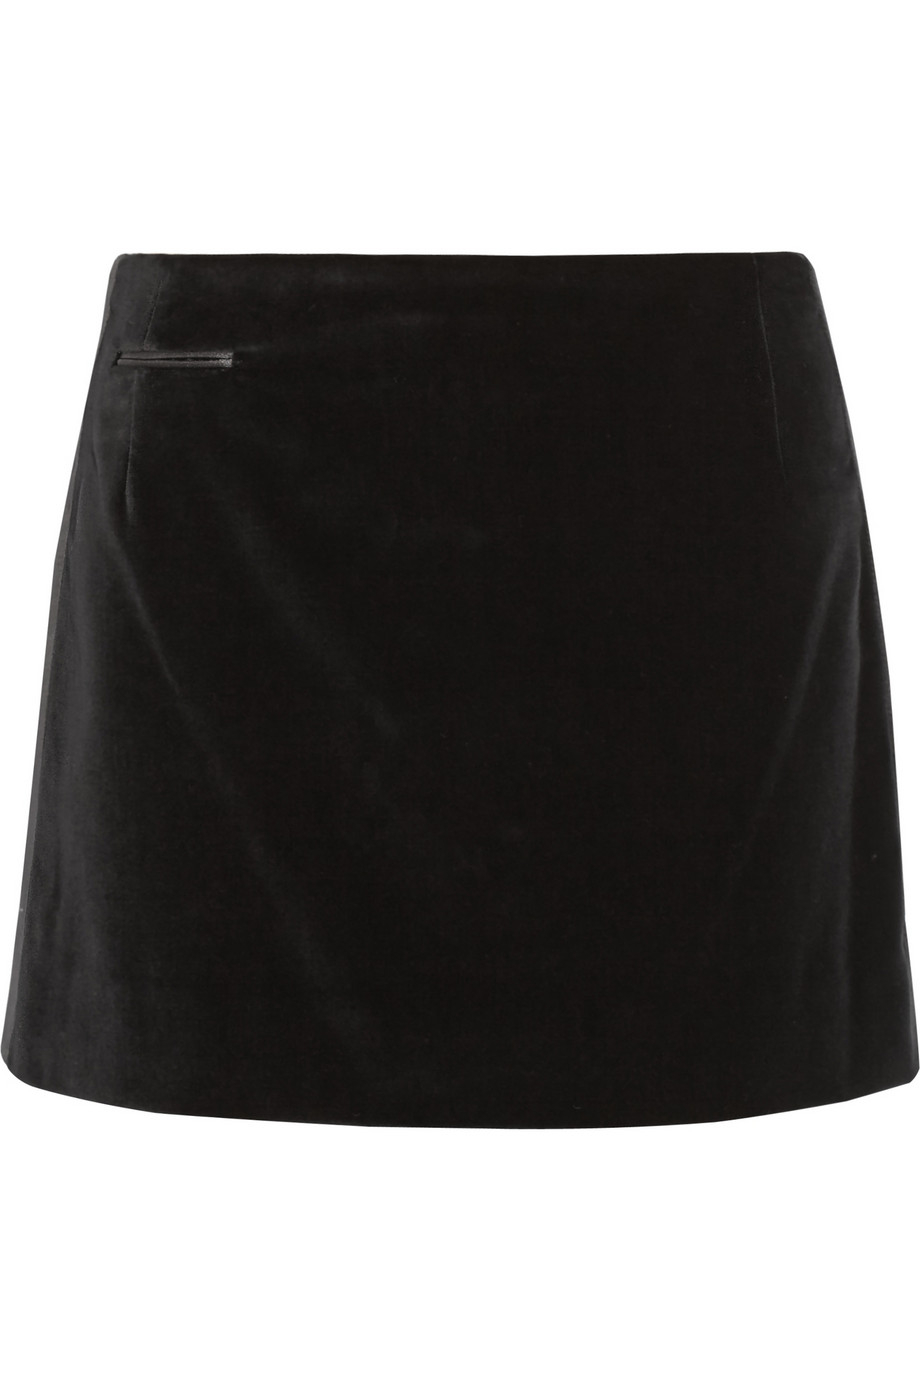 Lyst - Marc jacobs Silk Satin-Trimmed Velvet Mini Skirt in Black